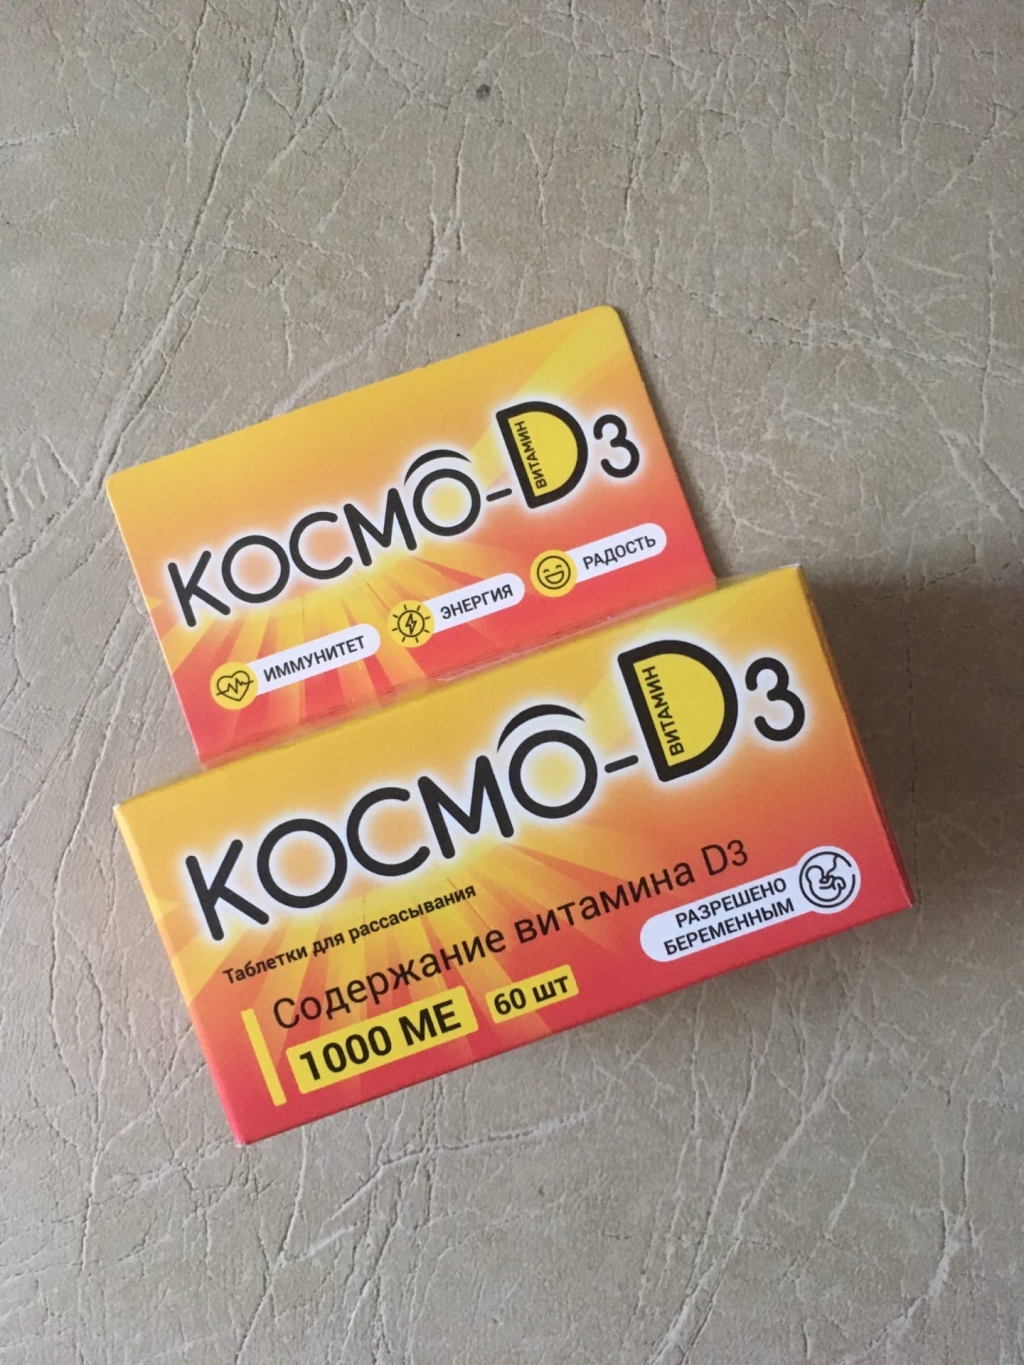 Космо D3 - Космо Д3 – надёжный источник витамина Д3 даже в самые пасмурные времен